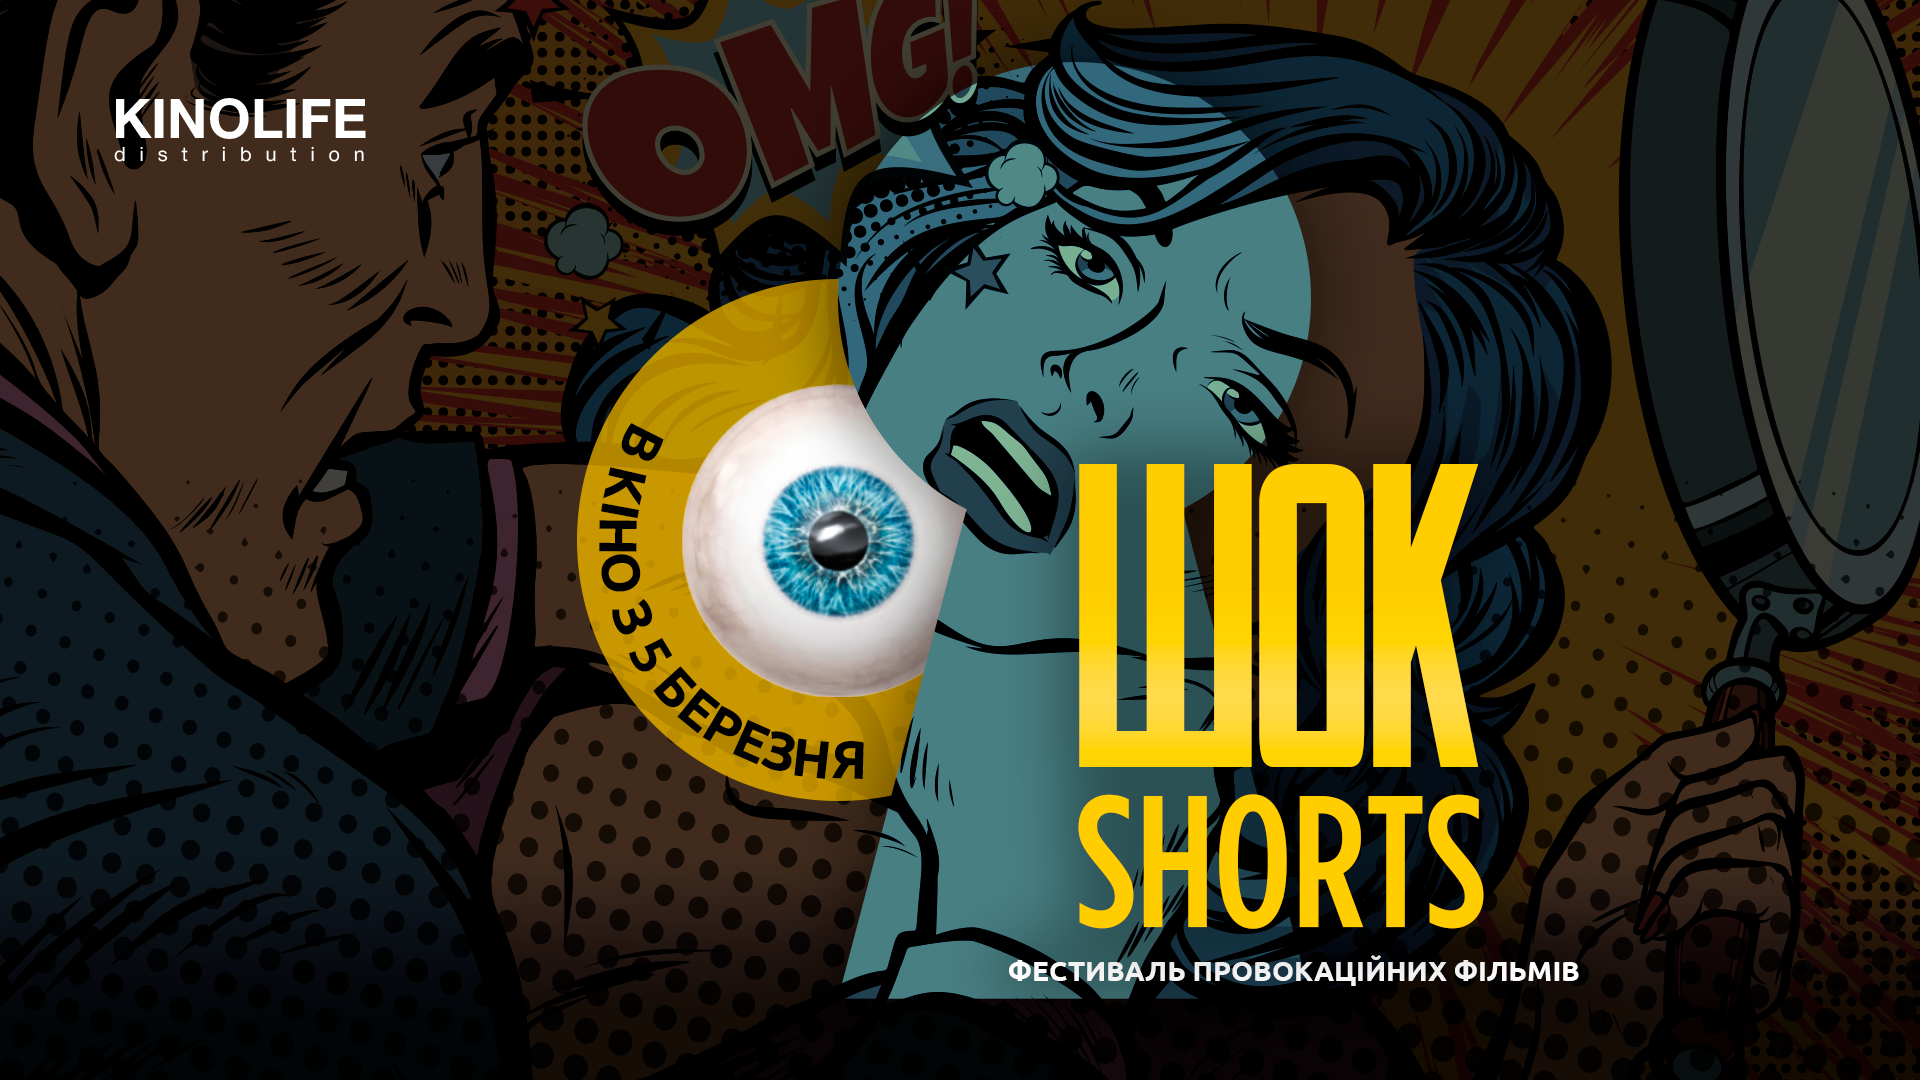 👽 Гайд фестивалем короткометражного кіно ШОК-Shorts 2020: які стрічки покажуть